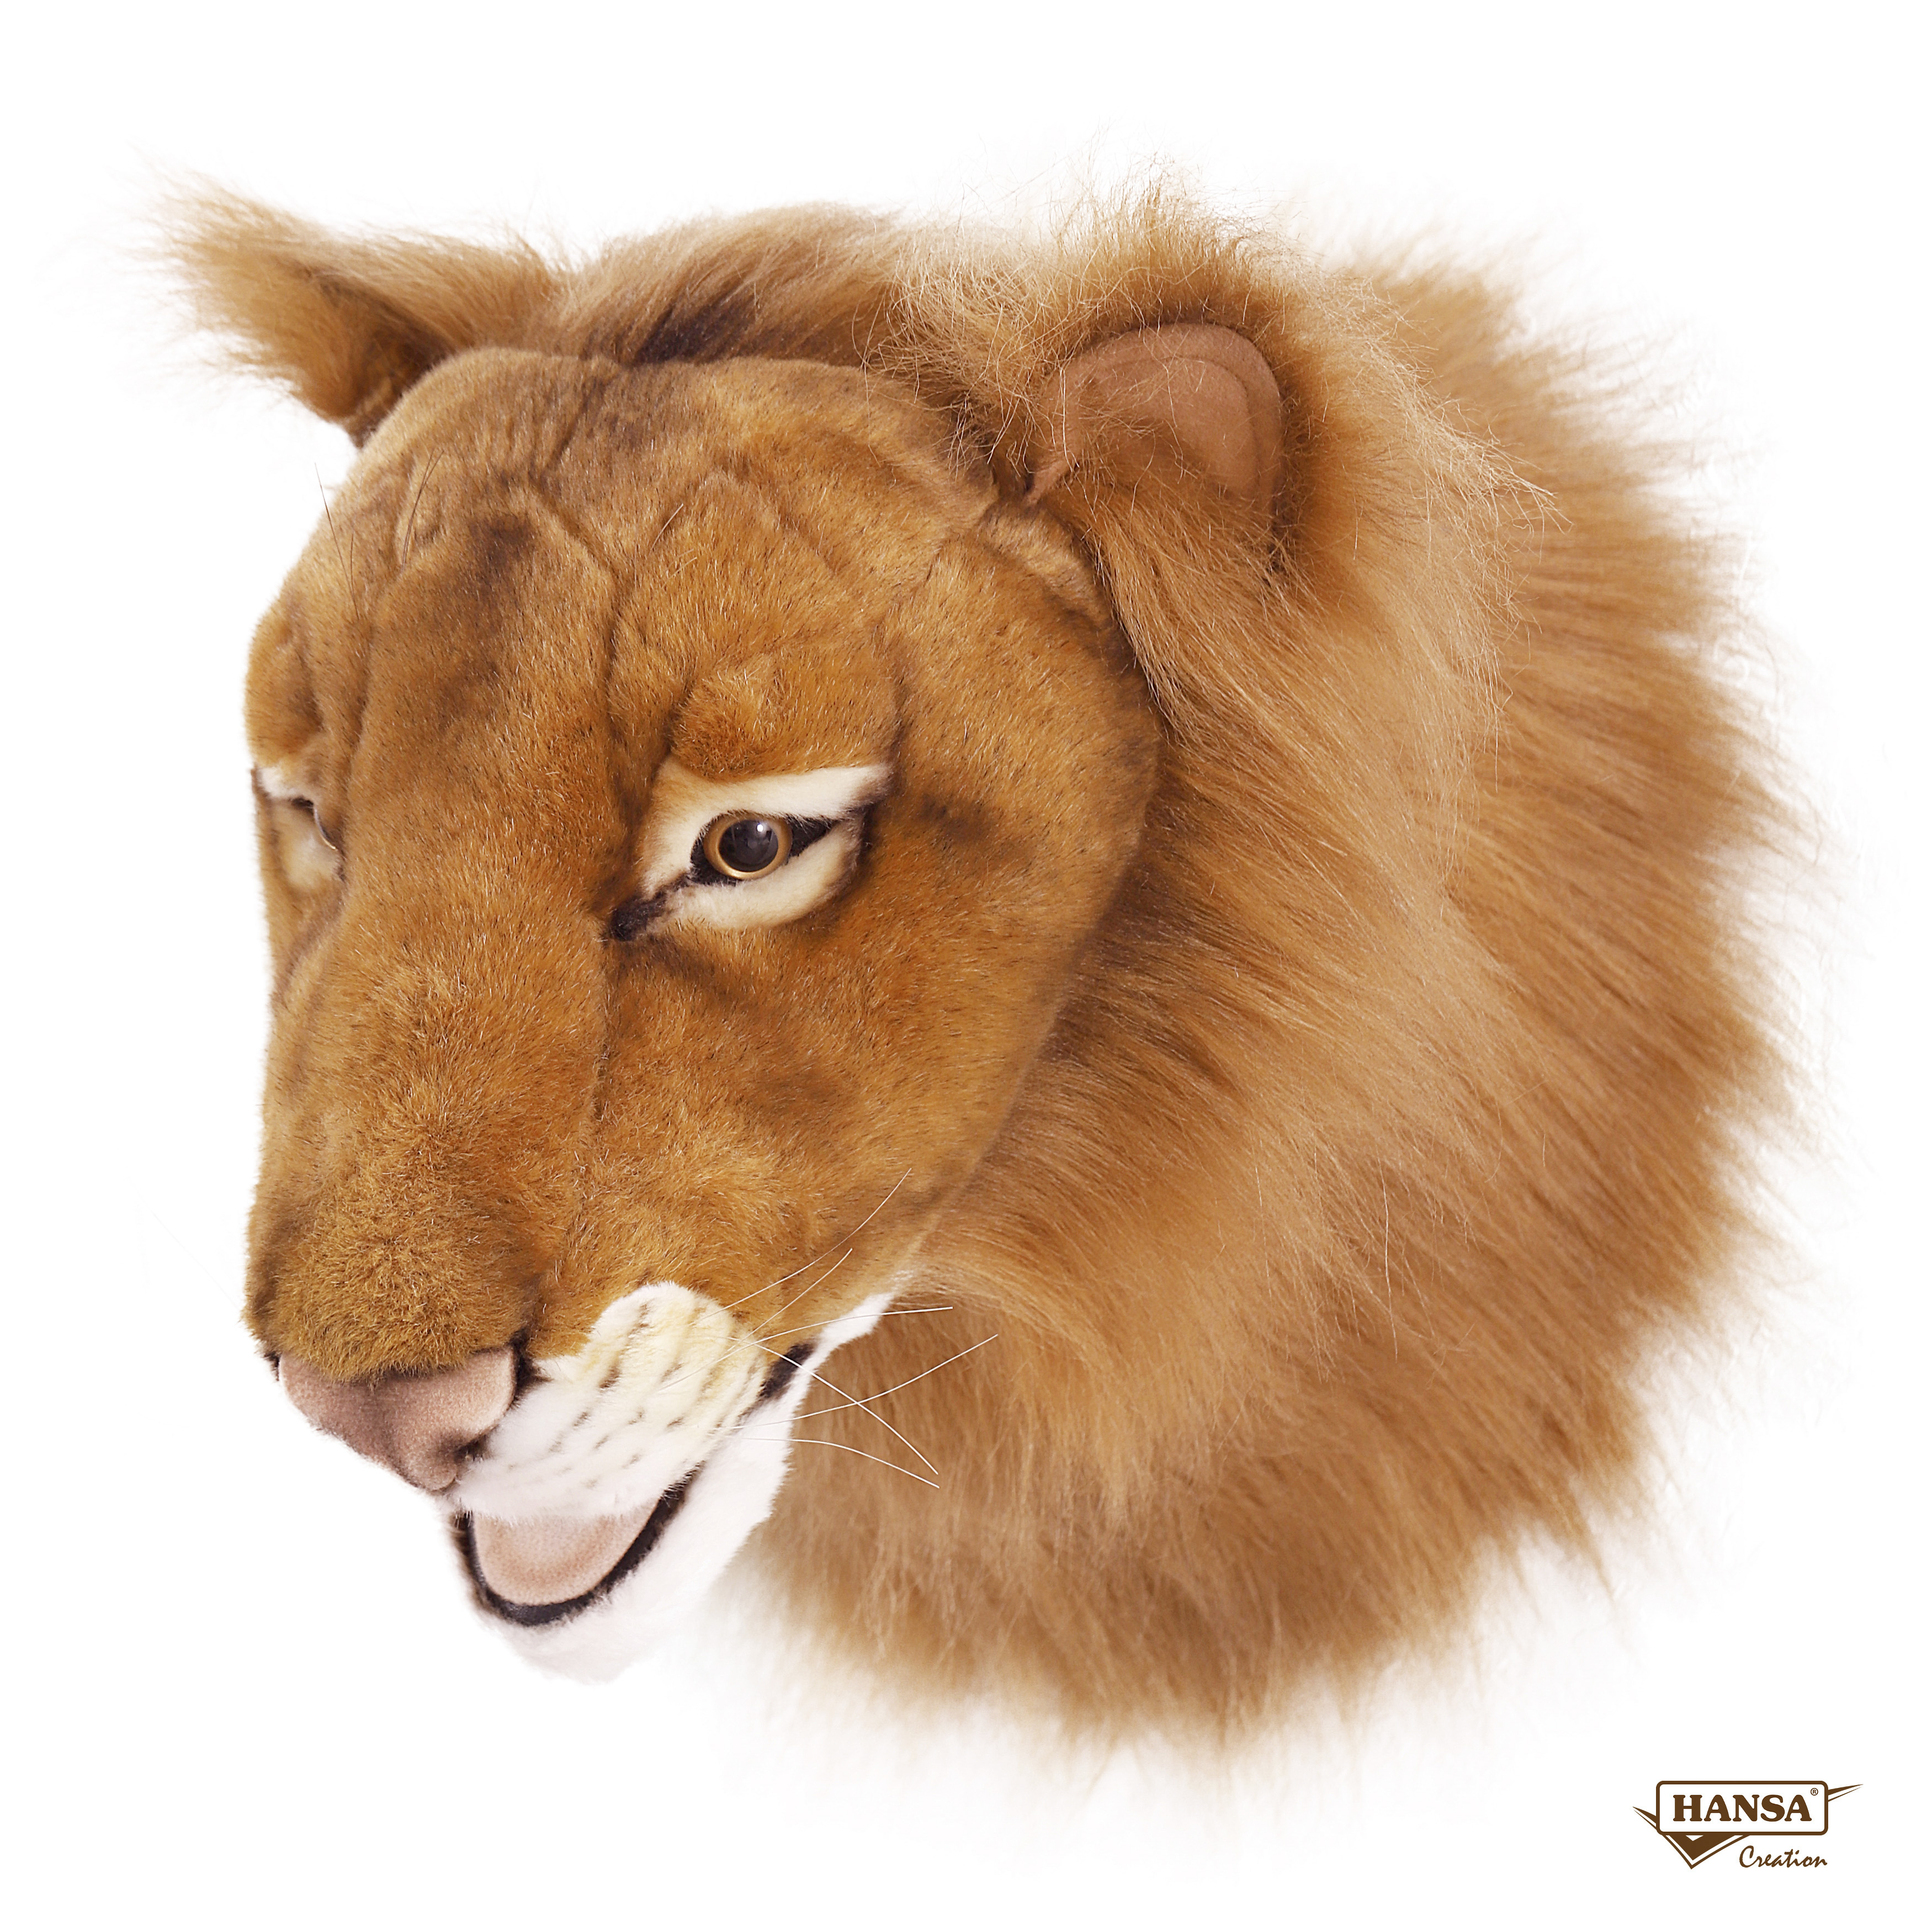 Реалистичная мягкая игрушка Hansa Creation Голова льва, 39 см реалистичная мягкая игрушка hansa creation котенок стоящий рыжий 30 см 6573